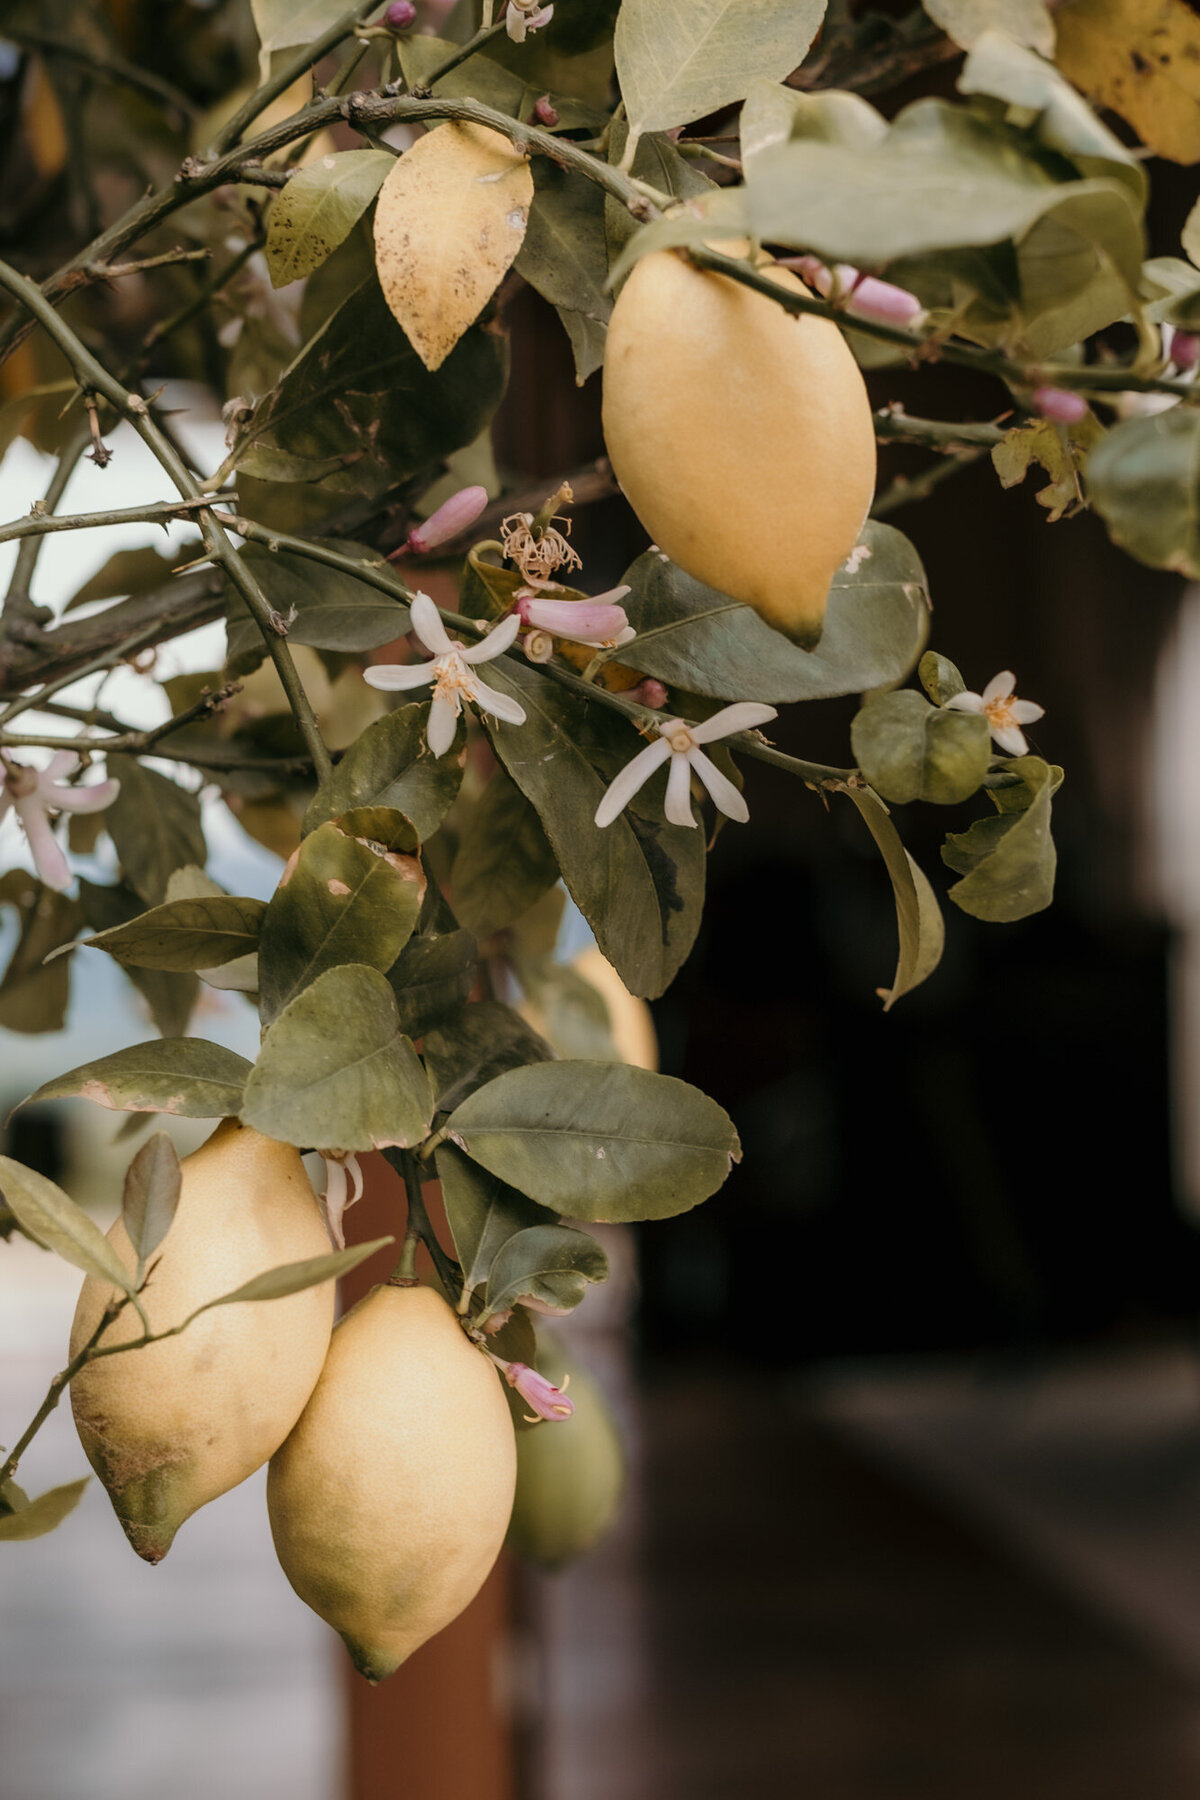 Drei Zitronen hängen an einem blühenden Zitronenbaum in einer Nahaufnahme.